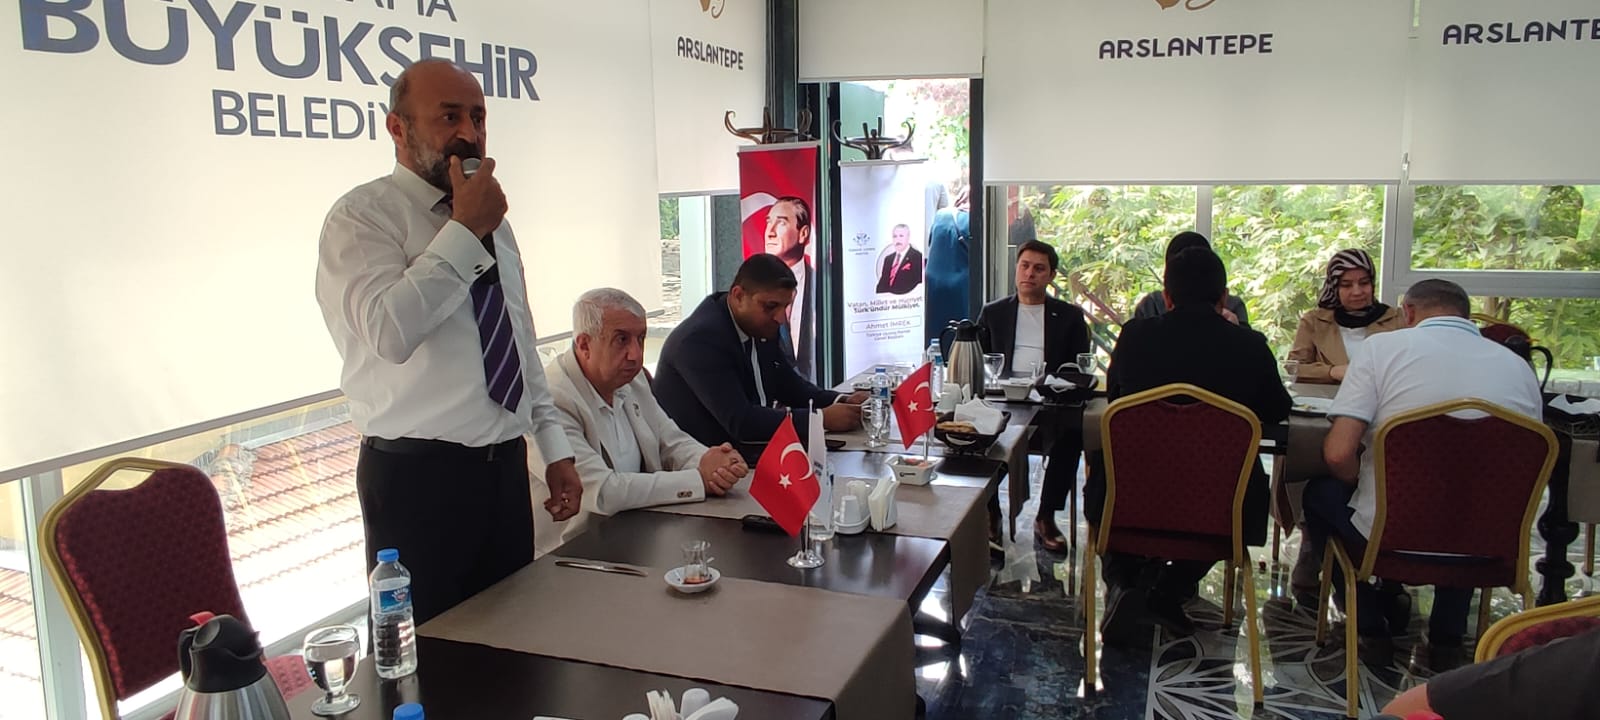 İmrek: ‘Kaybedilen Türk kimliğini tekrar kazandıracağız’